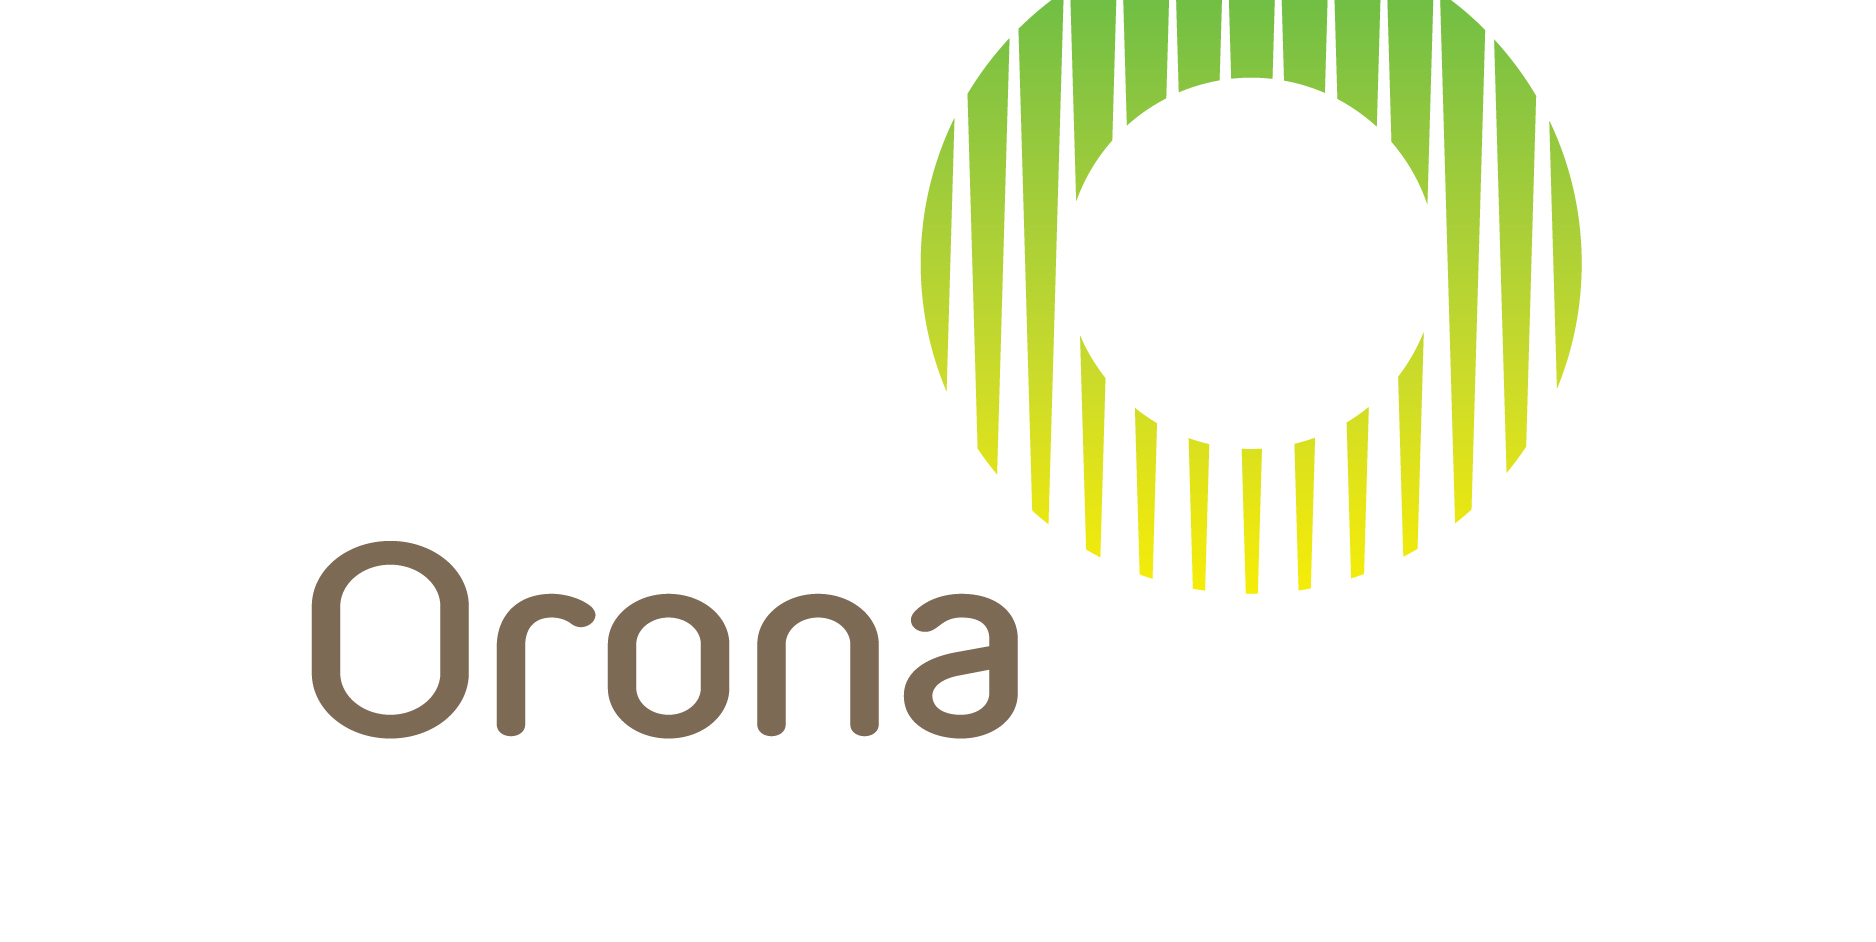 Ký kết và nâng mức hợp tác chiến lược với Công ty thang máy Orona (Tây Ban Nha) - thuộc tập đoàn Mondragon. 